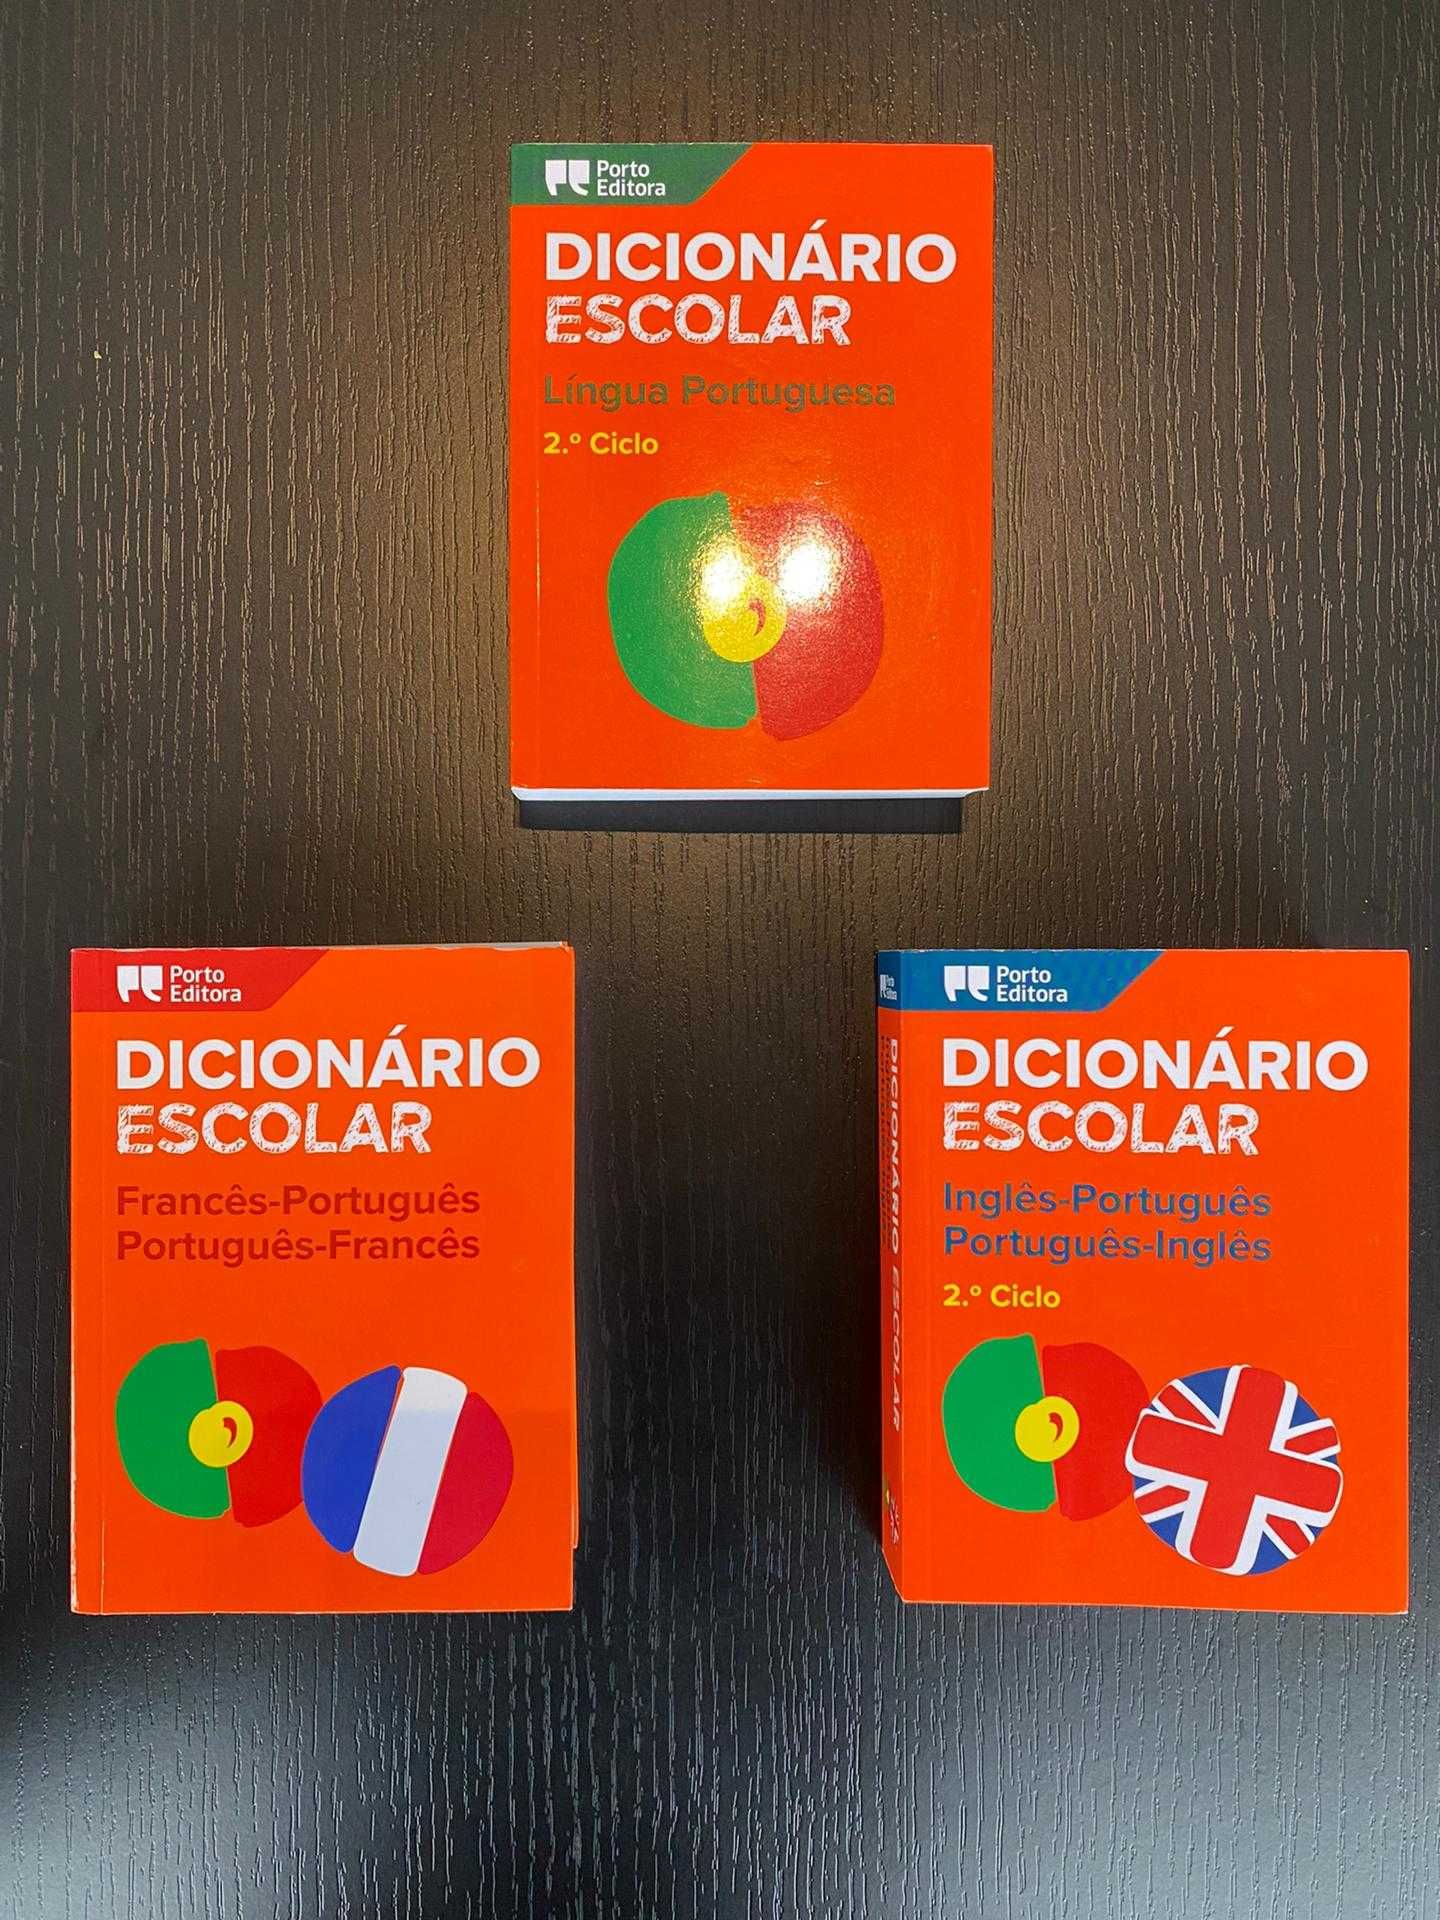 Dicionários Portugês, Português-Francês, Português-Inglês - 5€ cada